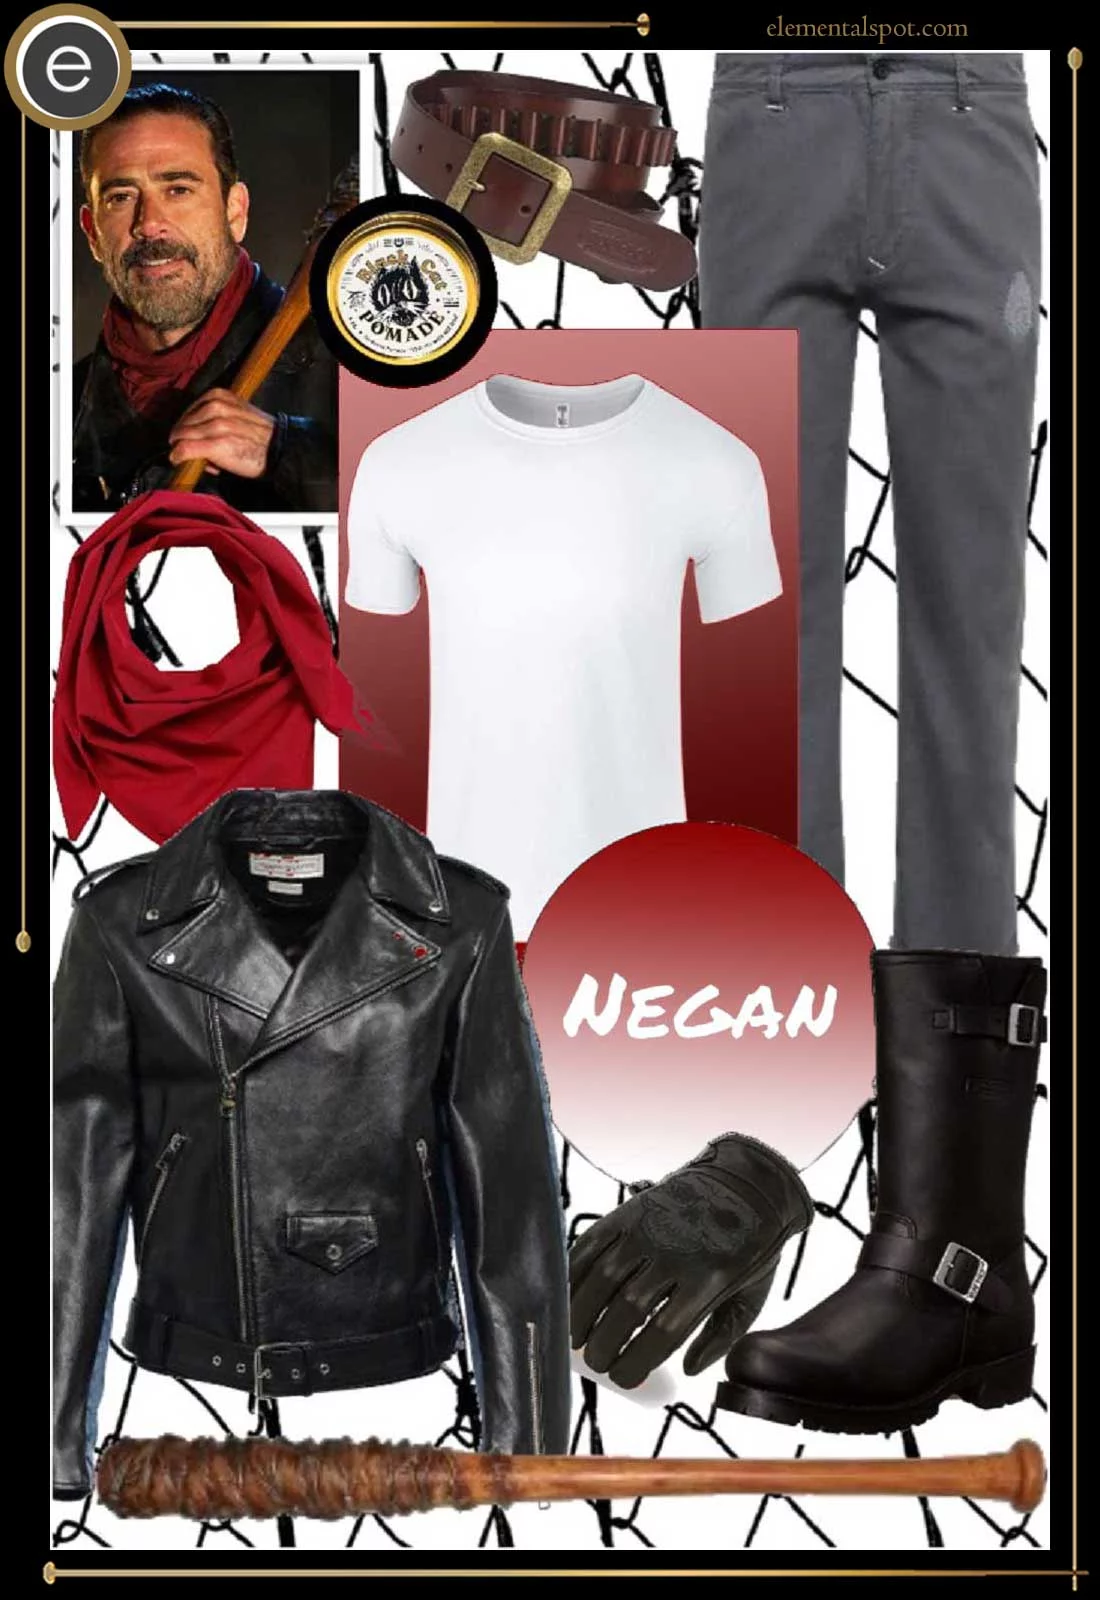 Dress Up Like Negan from Walking Dead - Elemental Spot